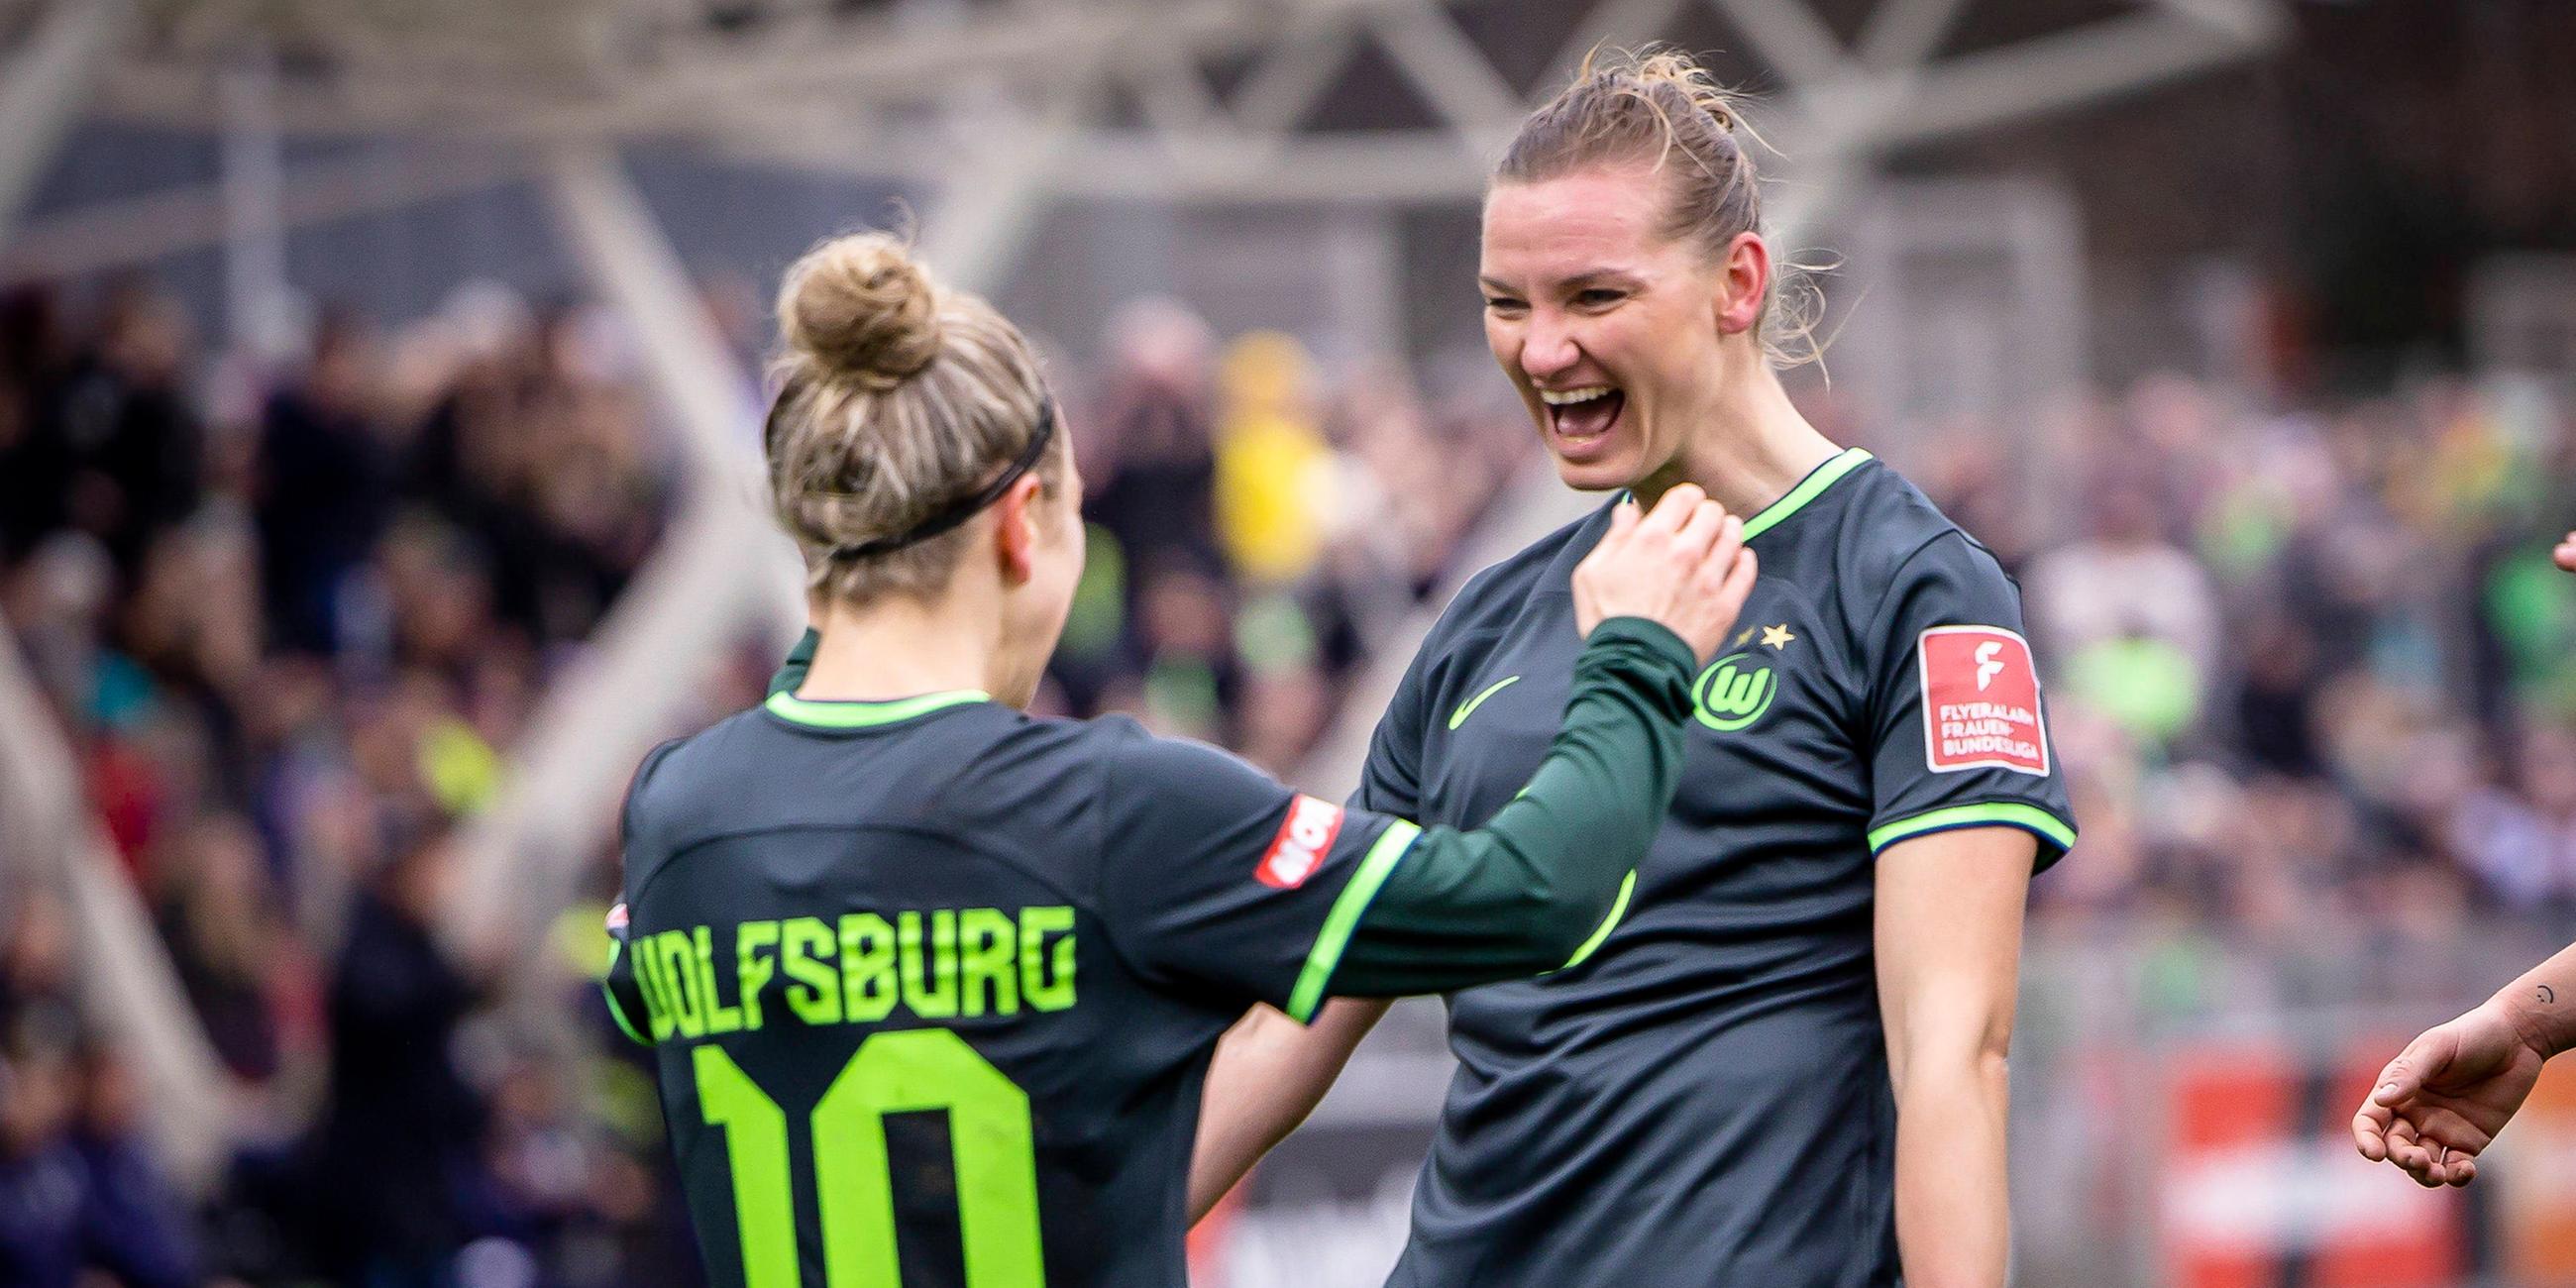 Alexandra Popp (VFL Wolfsburg 11) koepft zum 2:0 fuer den Gast und freut sich mit Svenja Huth (VFL Wolfsburg 10).